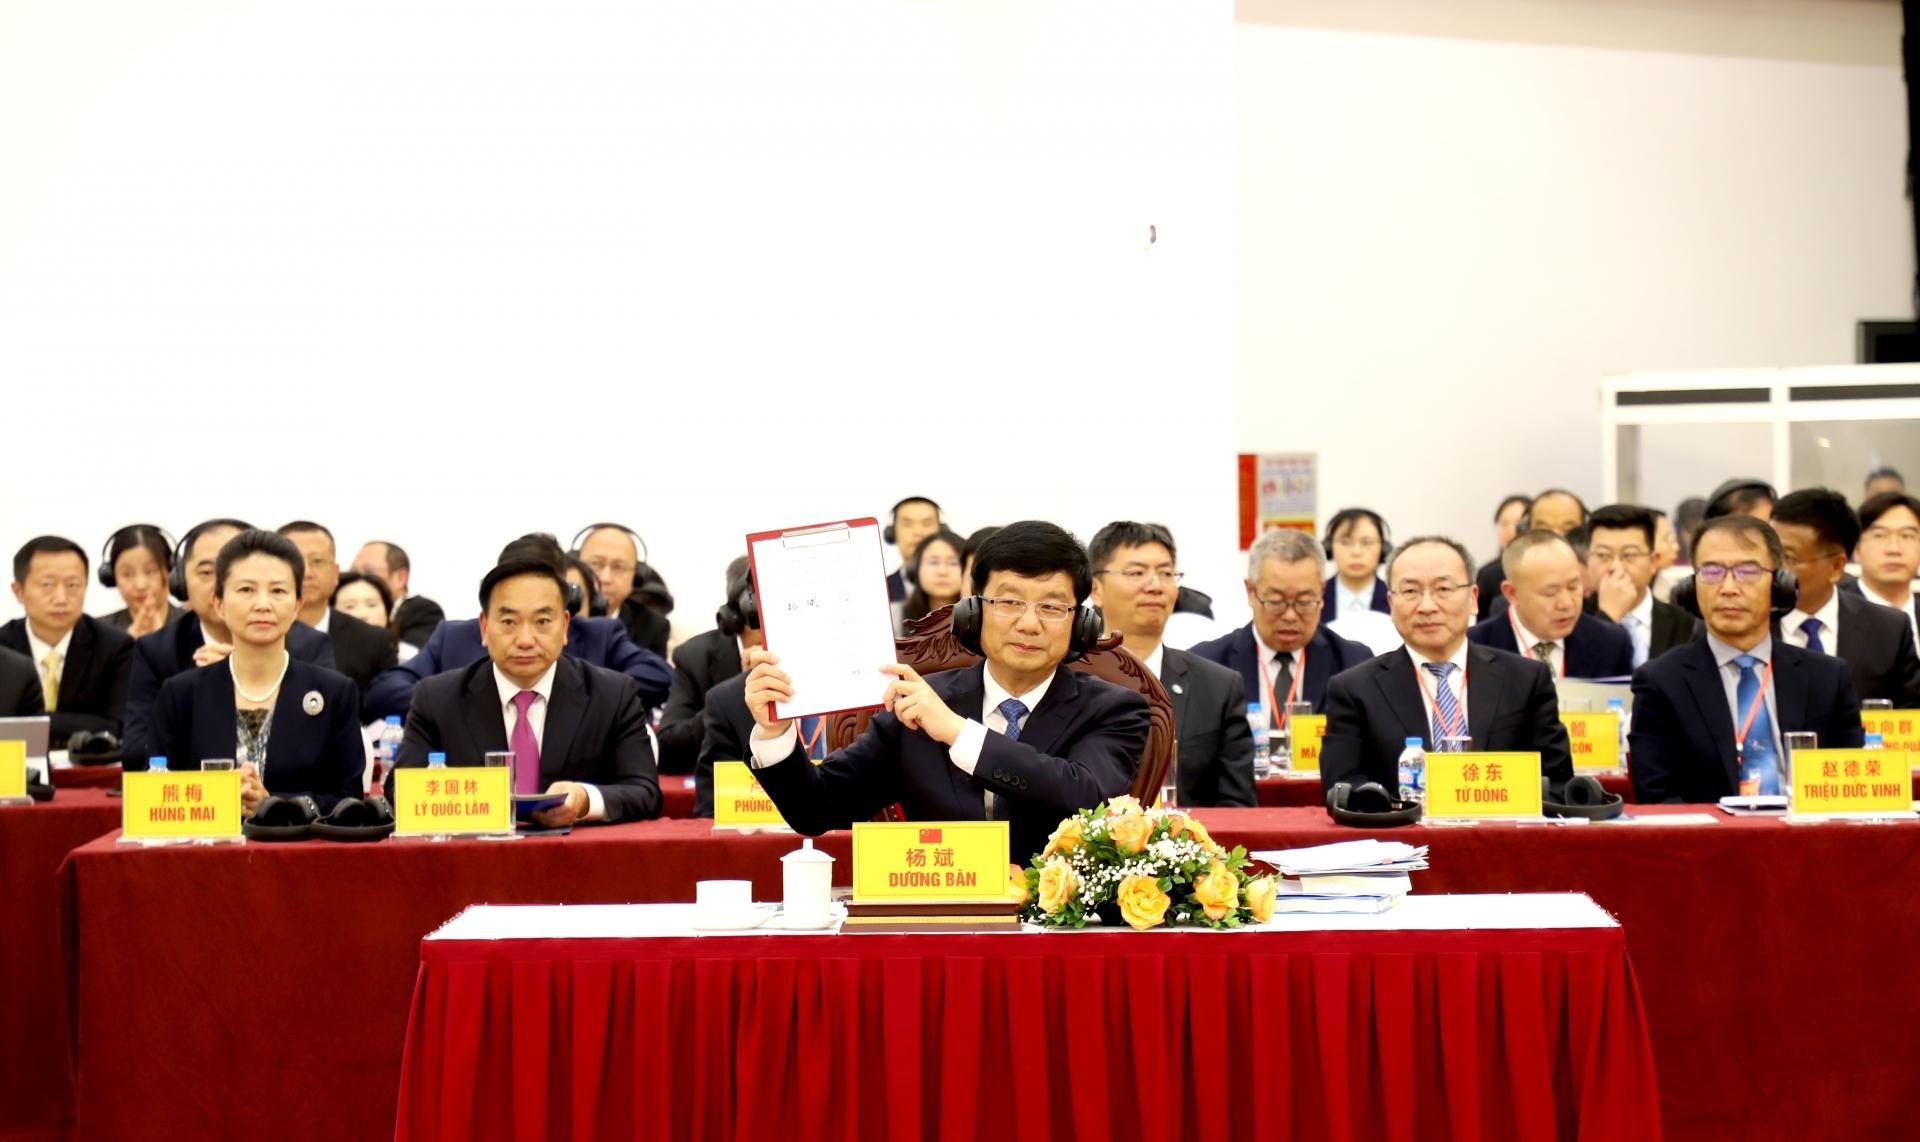 Phó tỉnh trưởng Chính quyền nhân dân tỉnh Vân Nam Dương Bân ký Biên bản Phiên họp lần thứ 9 Nhóm công tác liên hợp.